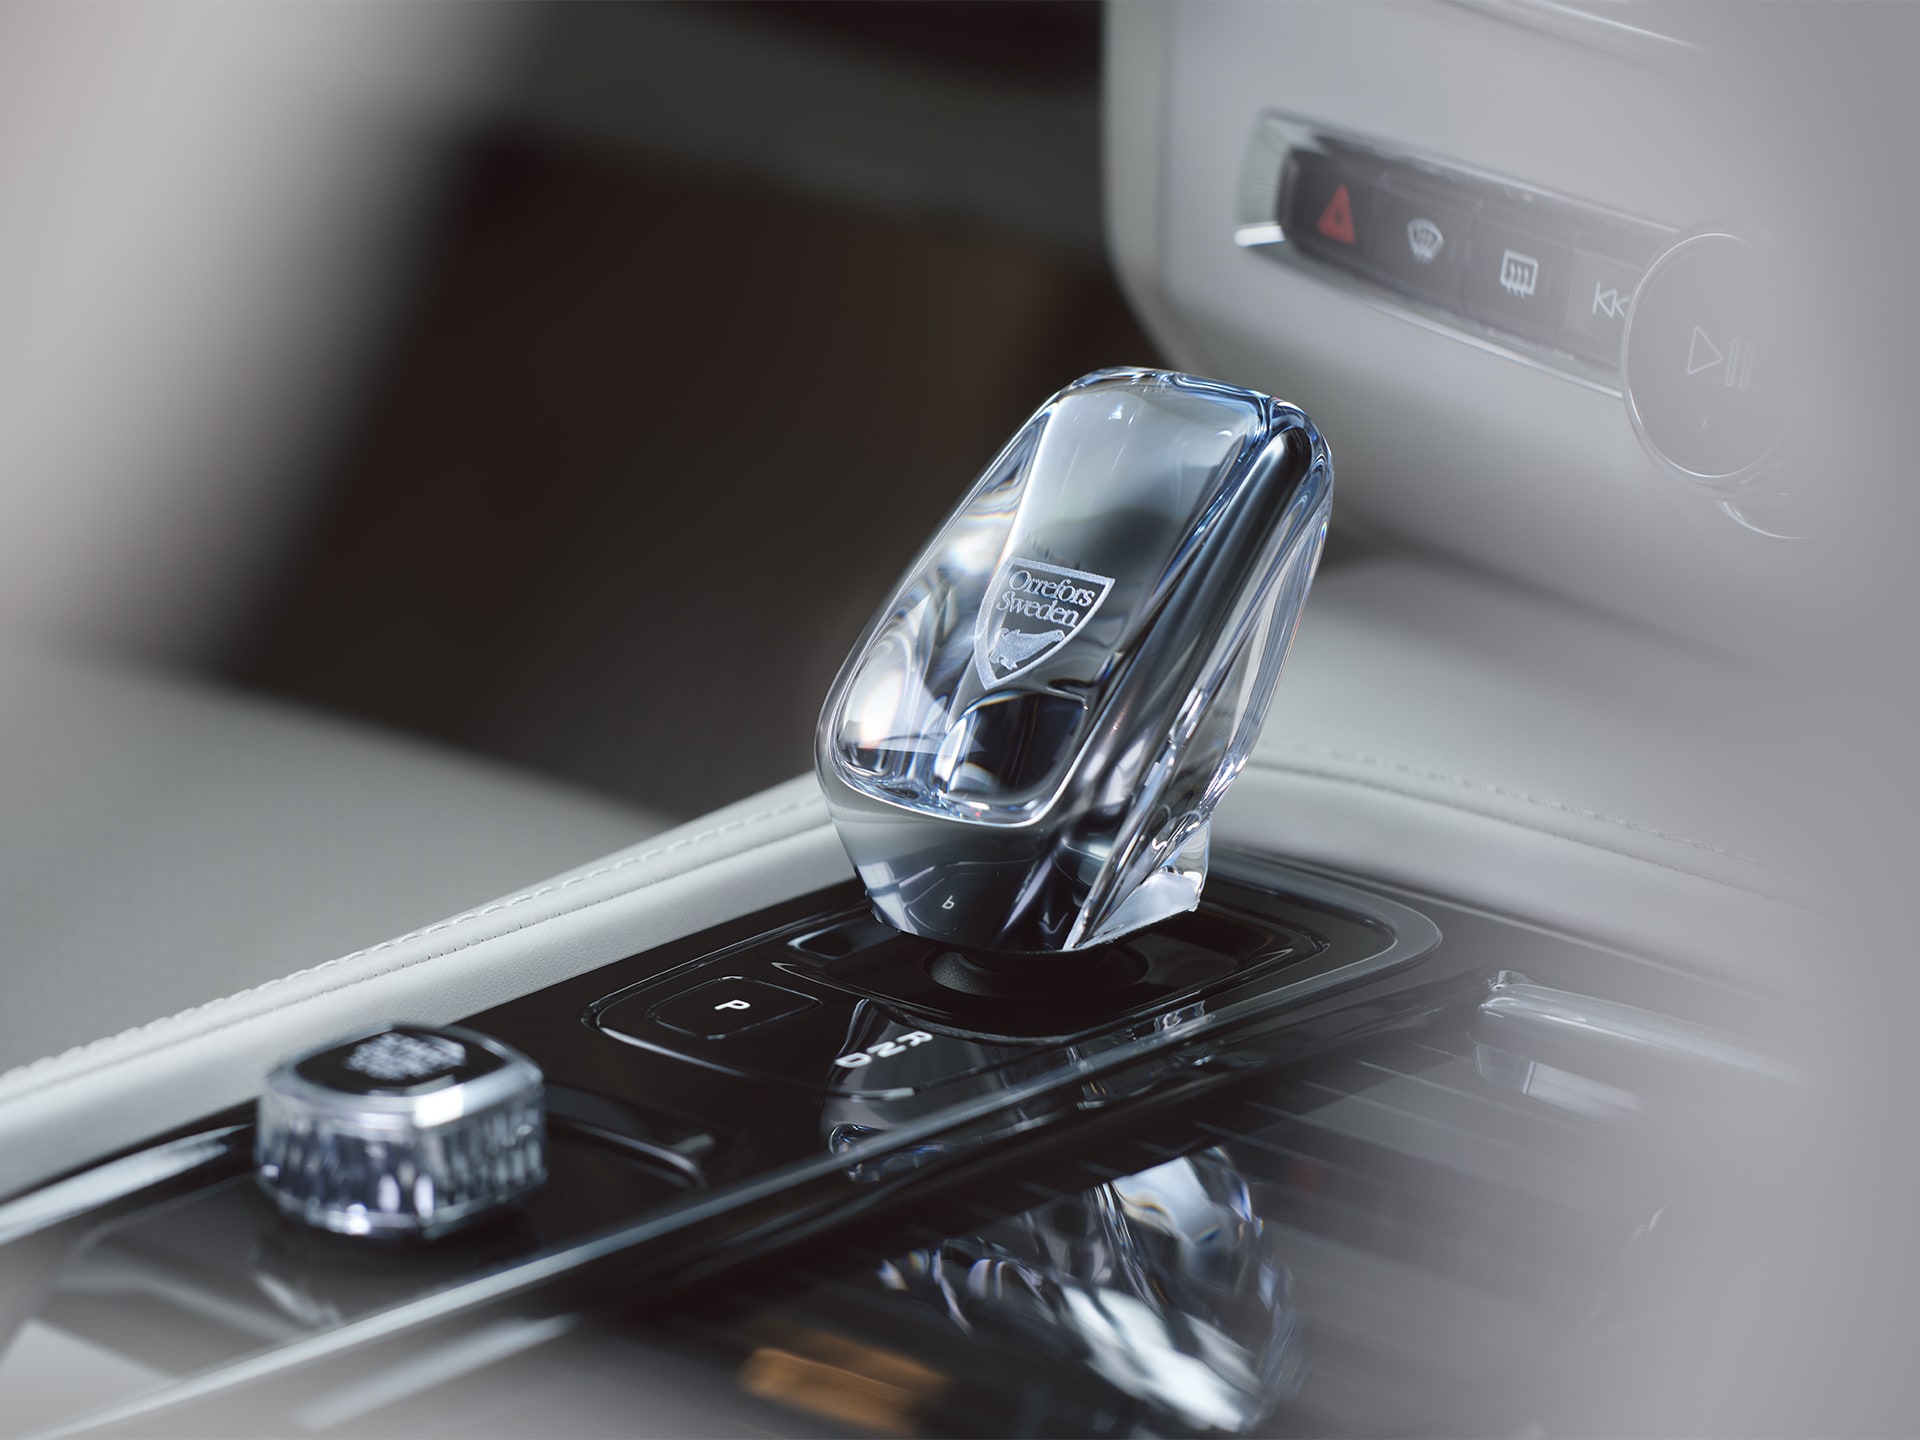 Kristalna ručica menjača od pravog švedskog kristala koju je izradila kompanija Orrefors u automobilu Volvo S90 Recharge.